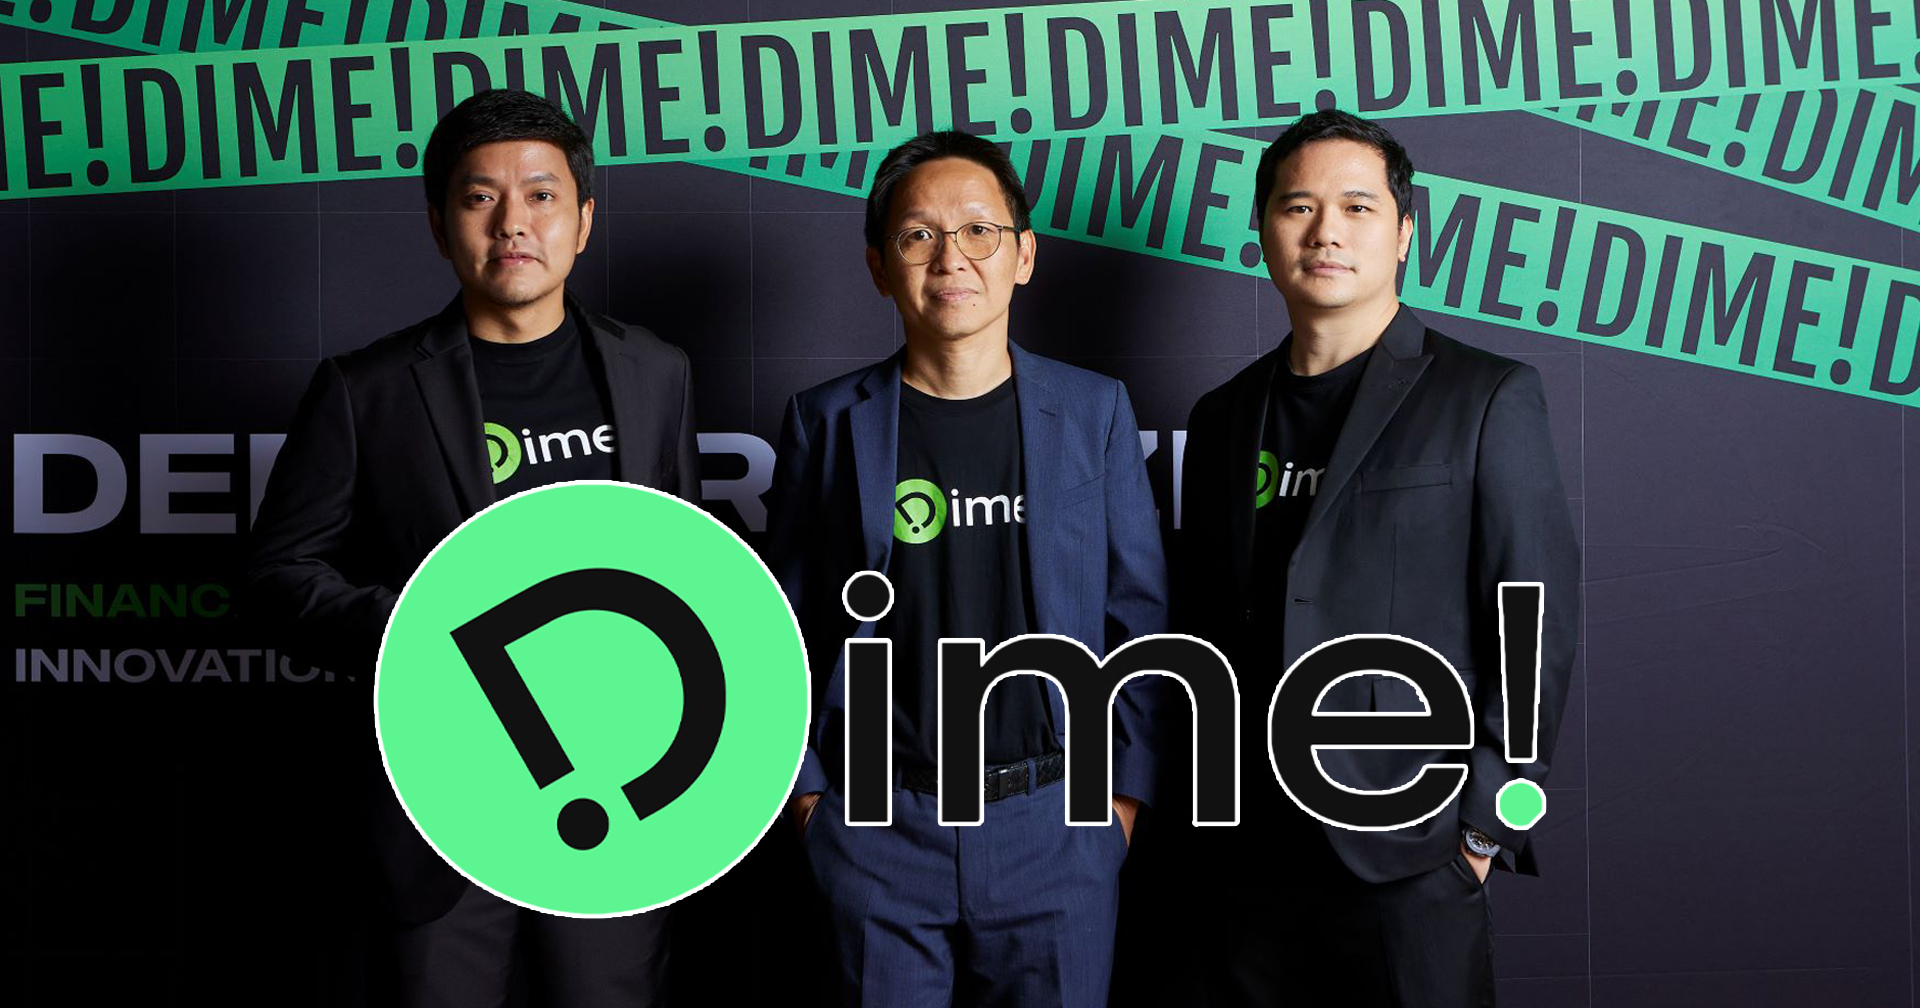 กลุ่มเกียรตินาคินภัทรเปิดตัว Dime! แอปการออม-การลงทุน เน้นลงทุนหุ้นต่างประเทศ